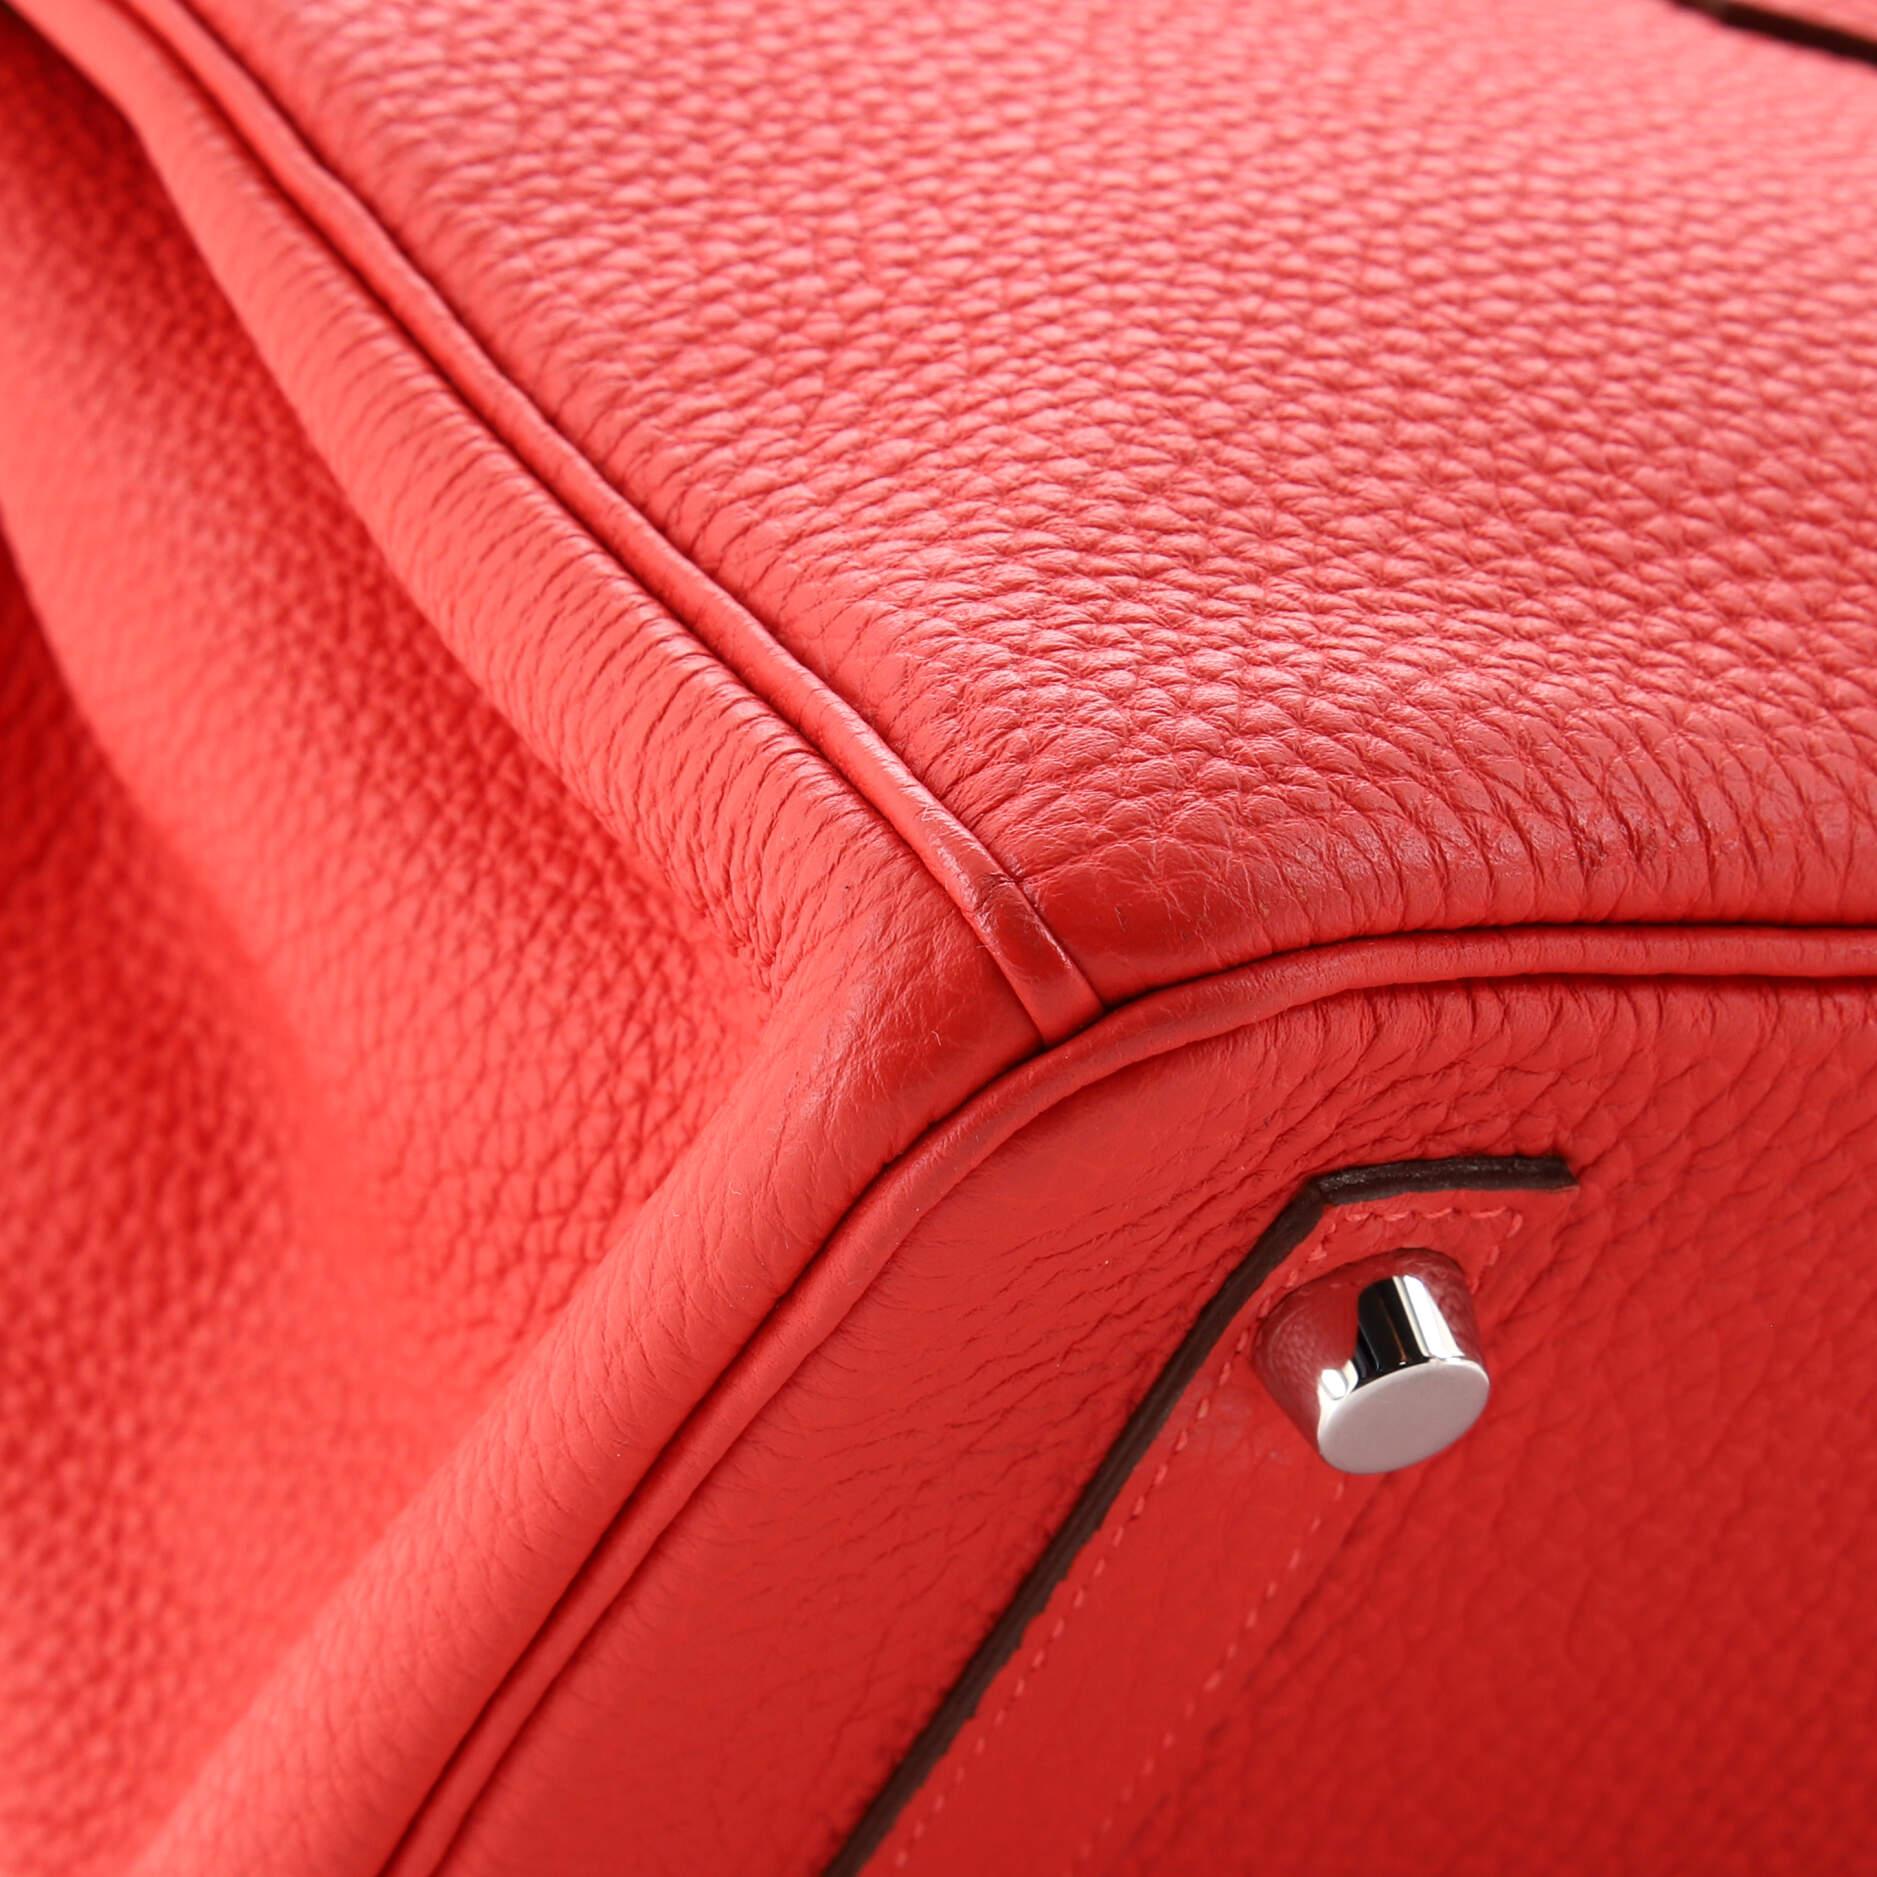 Hermes Birkin Handbag Rouge Pivoine Togo with Palladium Hardware 25 4